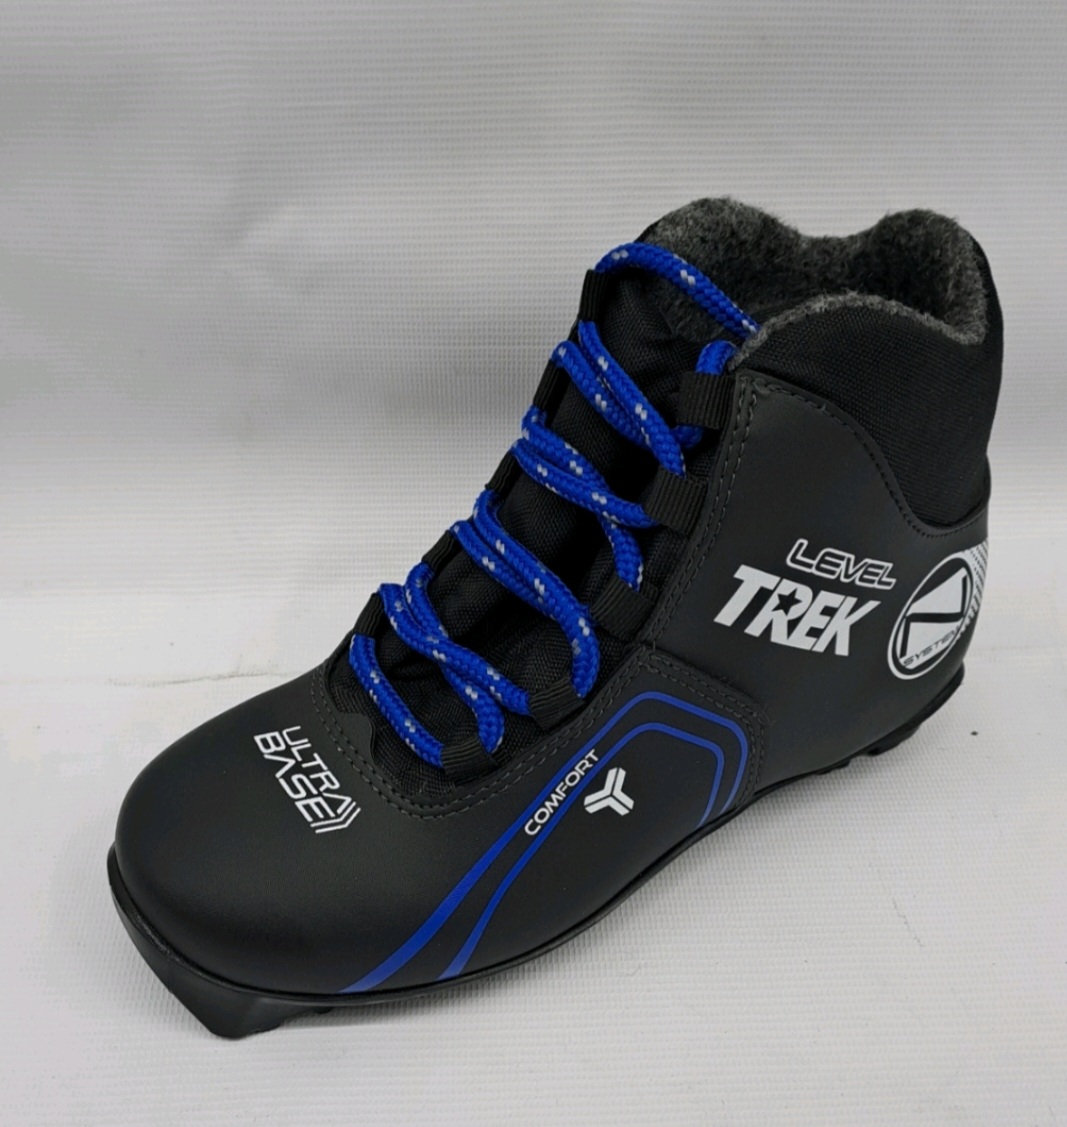 Ботинки лыжные TREK Level 3 черный лого синий RU40, EU41, CM25,5                                           